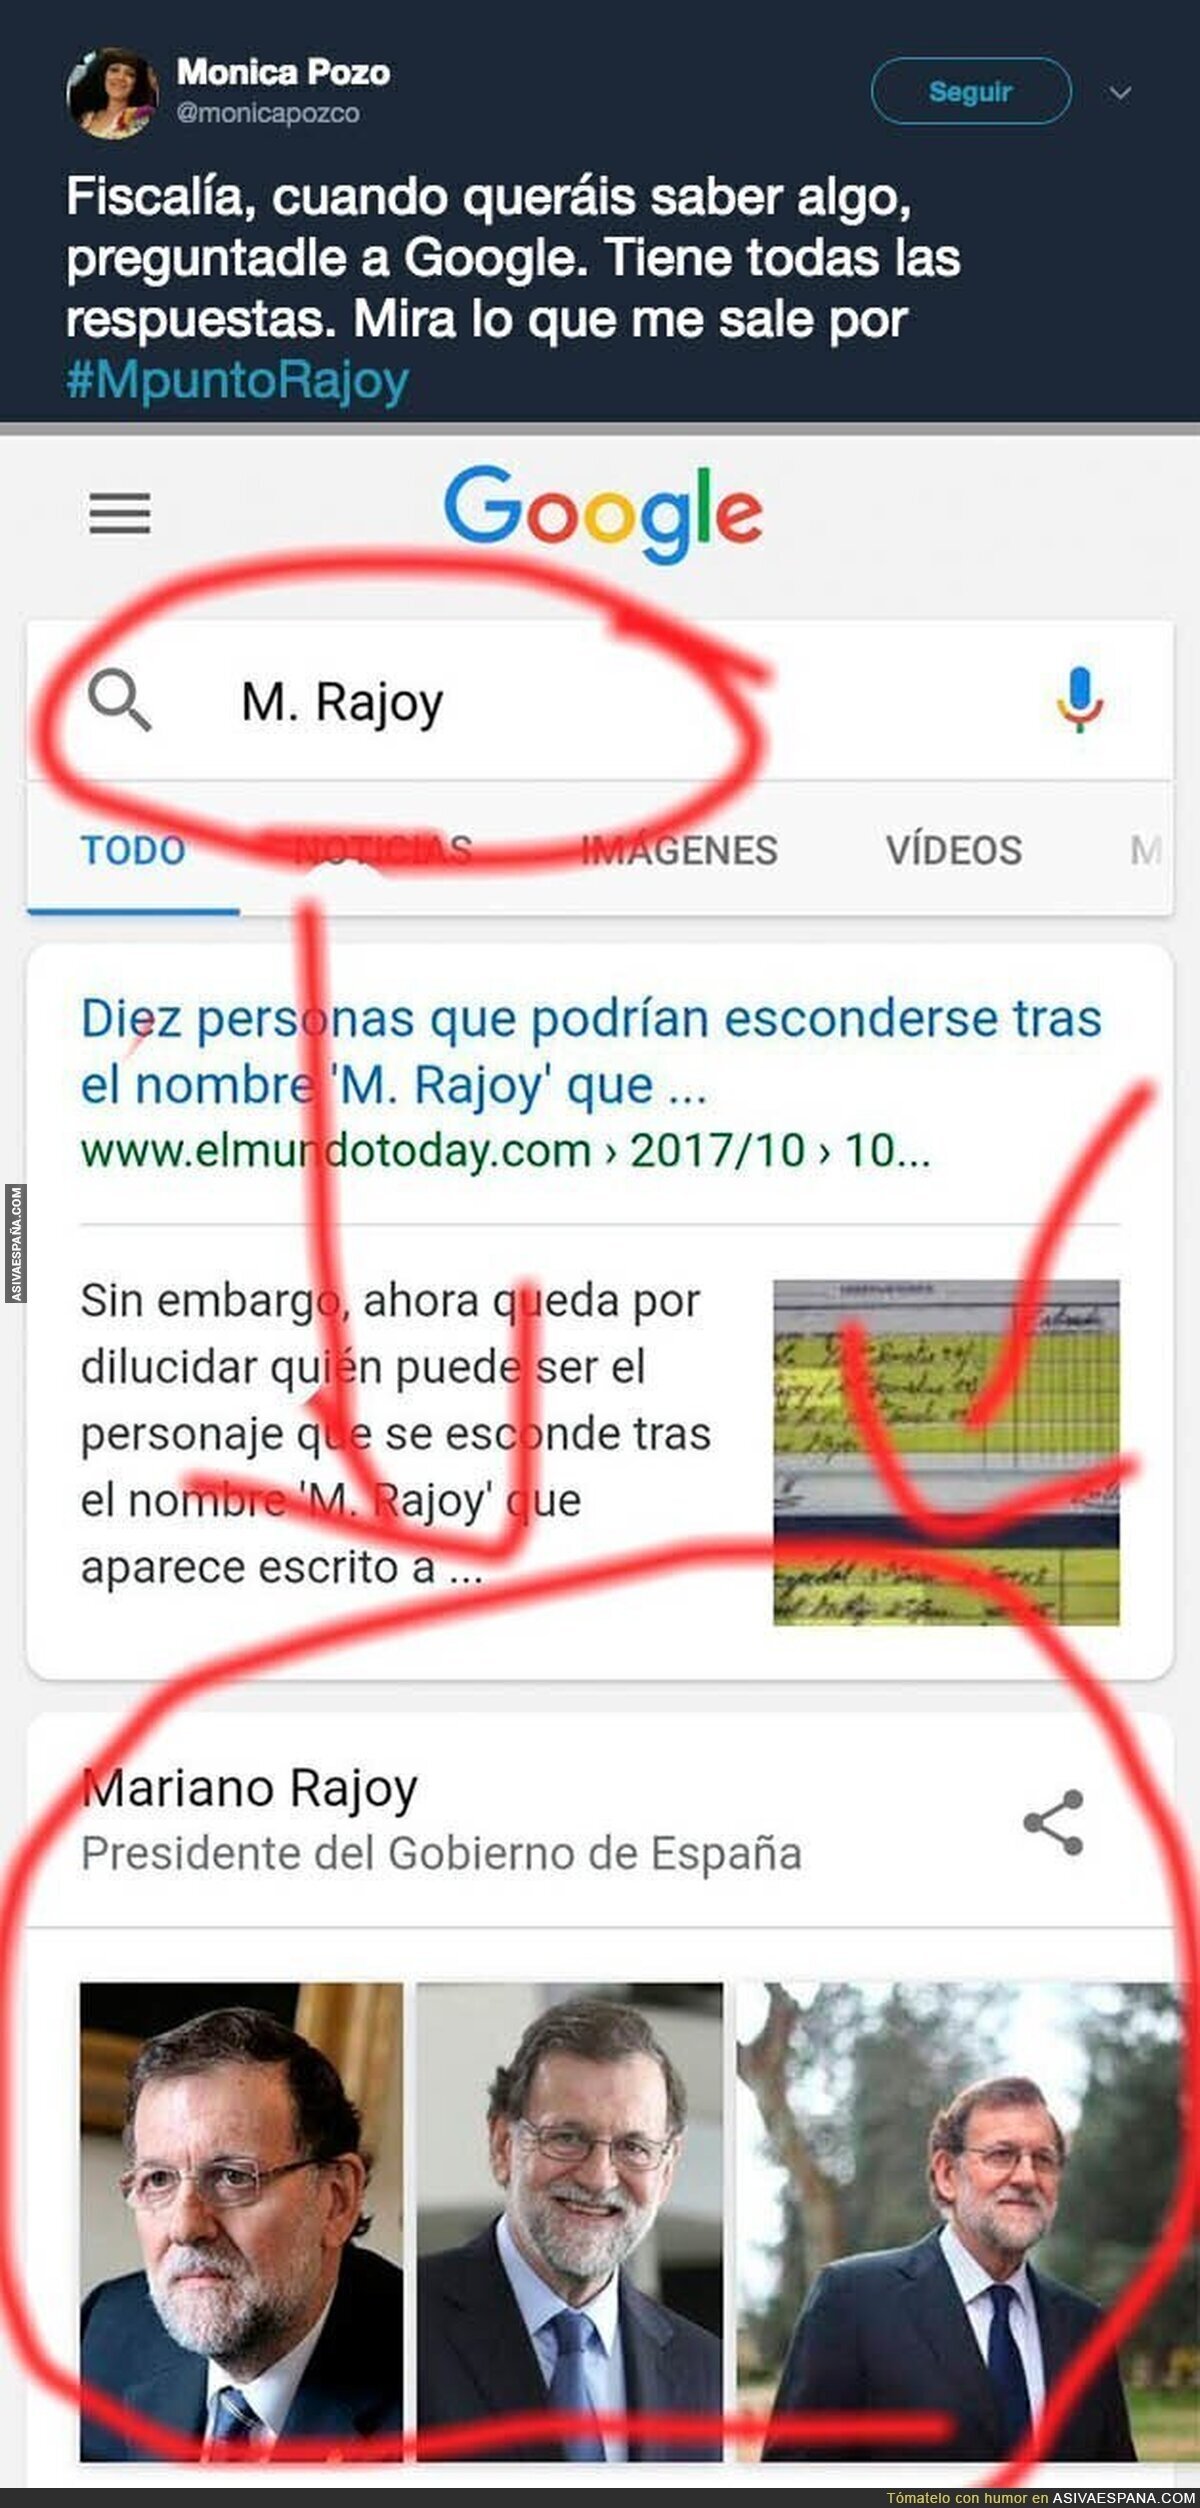 Se descubre como saber quien es M. Rajoy de esta fácil manera